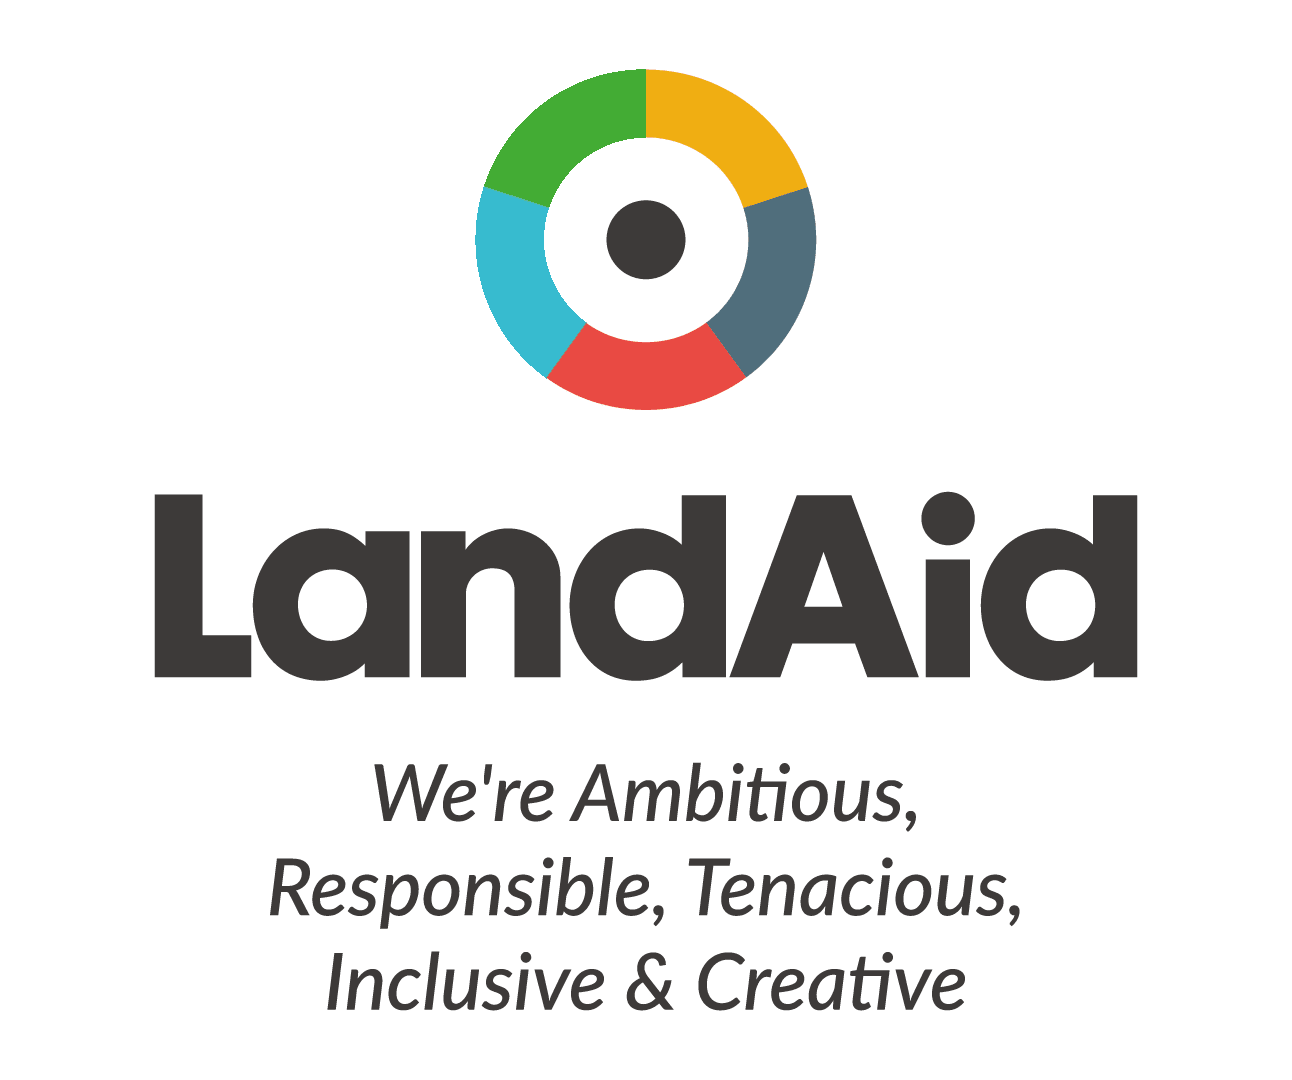 LandAid Values